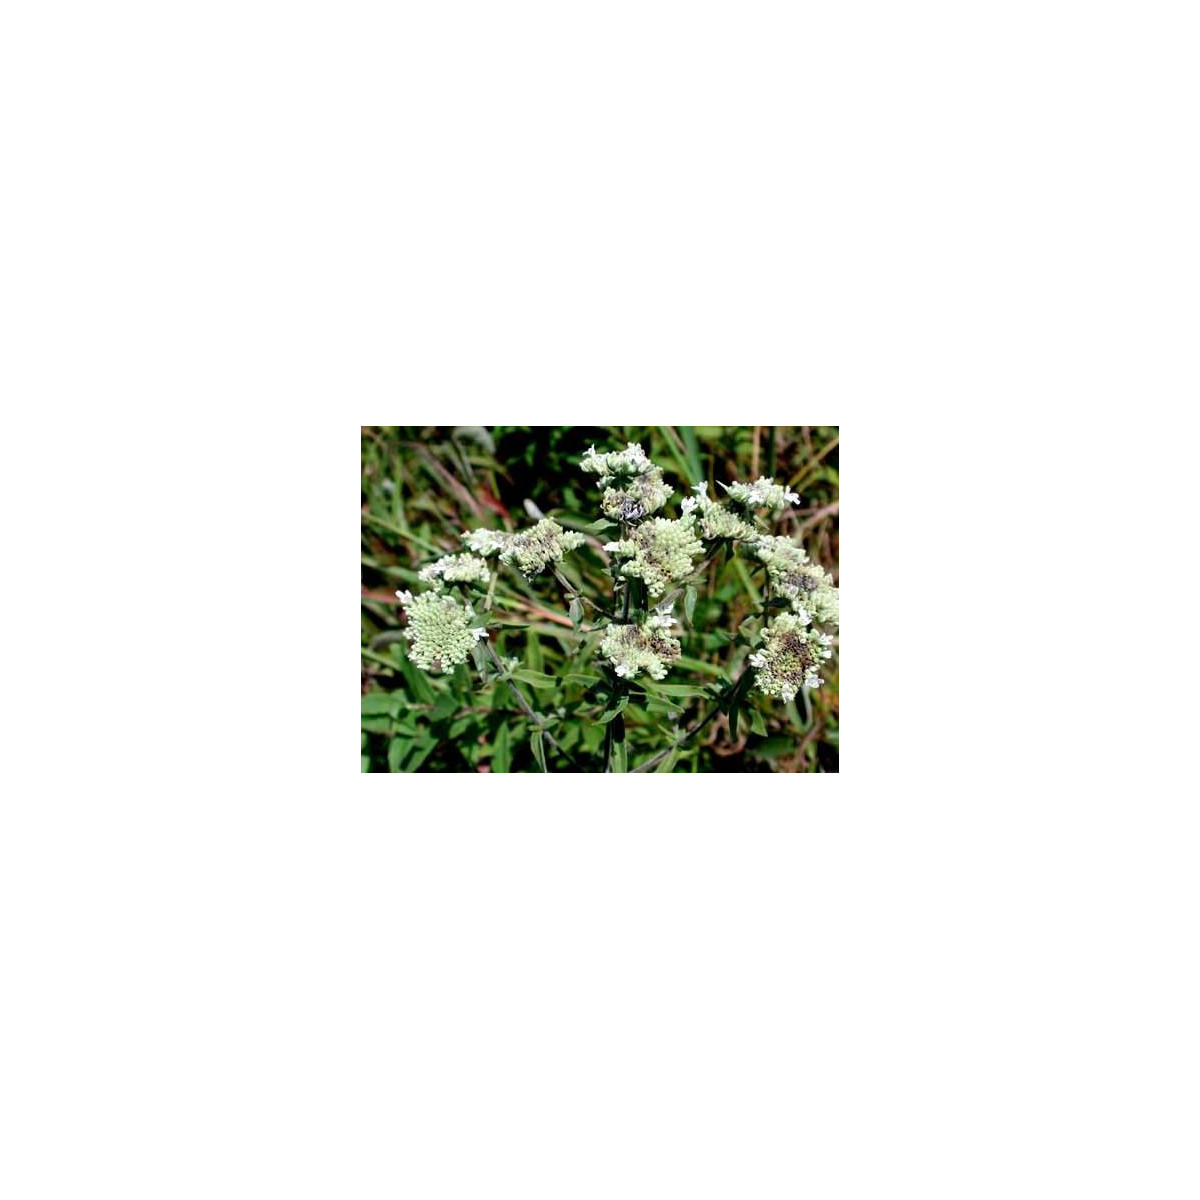 Americká horská máta - Pycnanthemum pilosum - semena máty - 20 ks